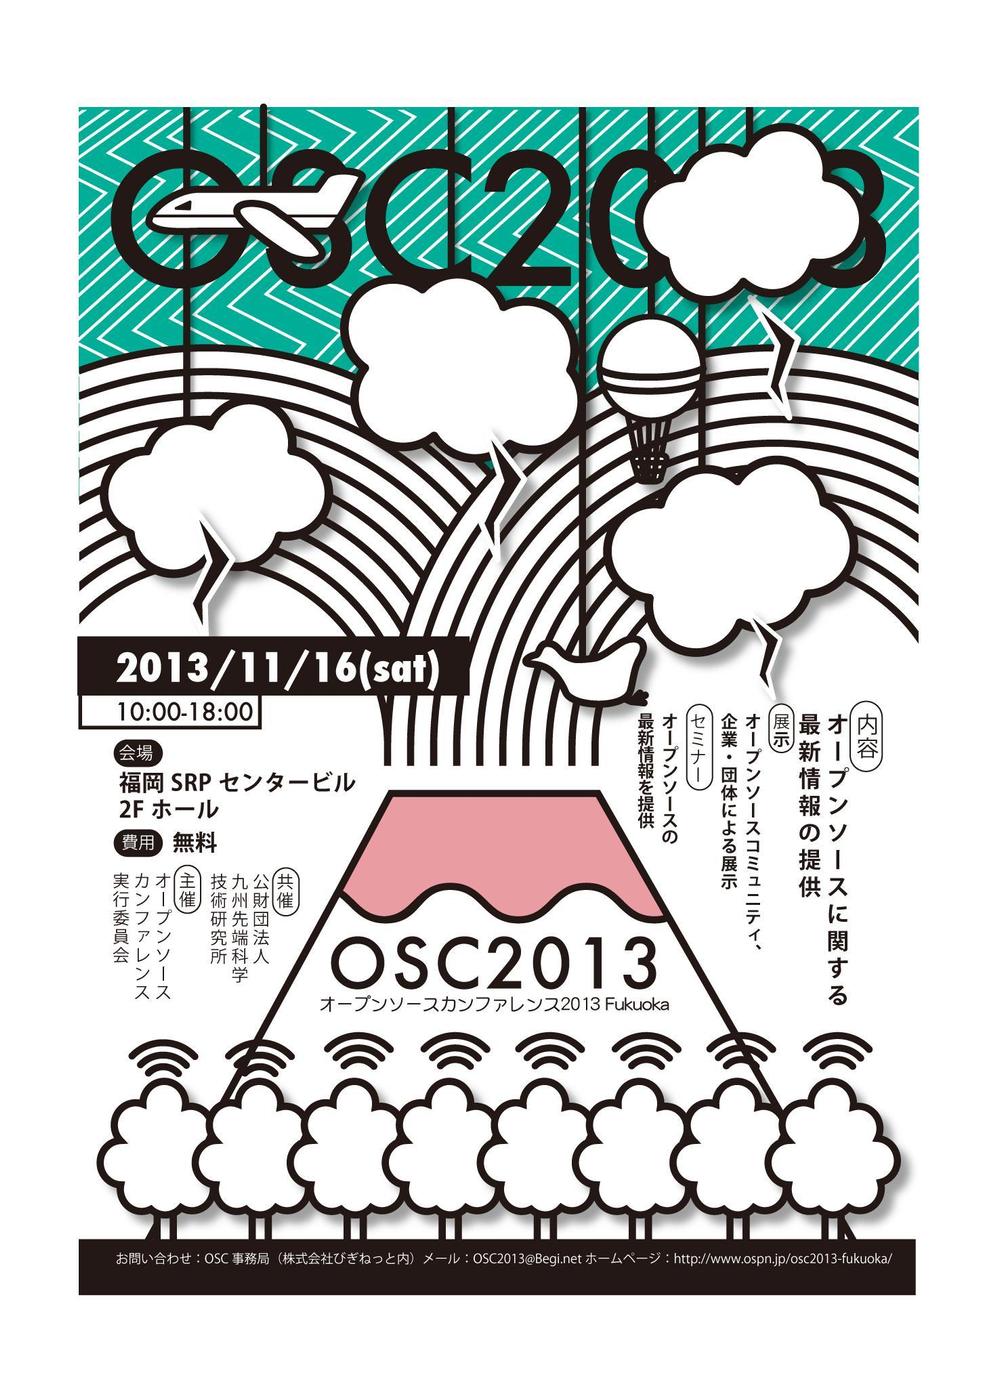 イベント「オープンソースカンファレンス2013 Fukuoka」のチラシ制作